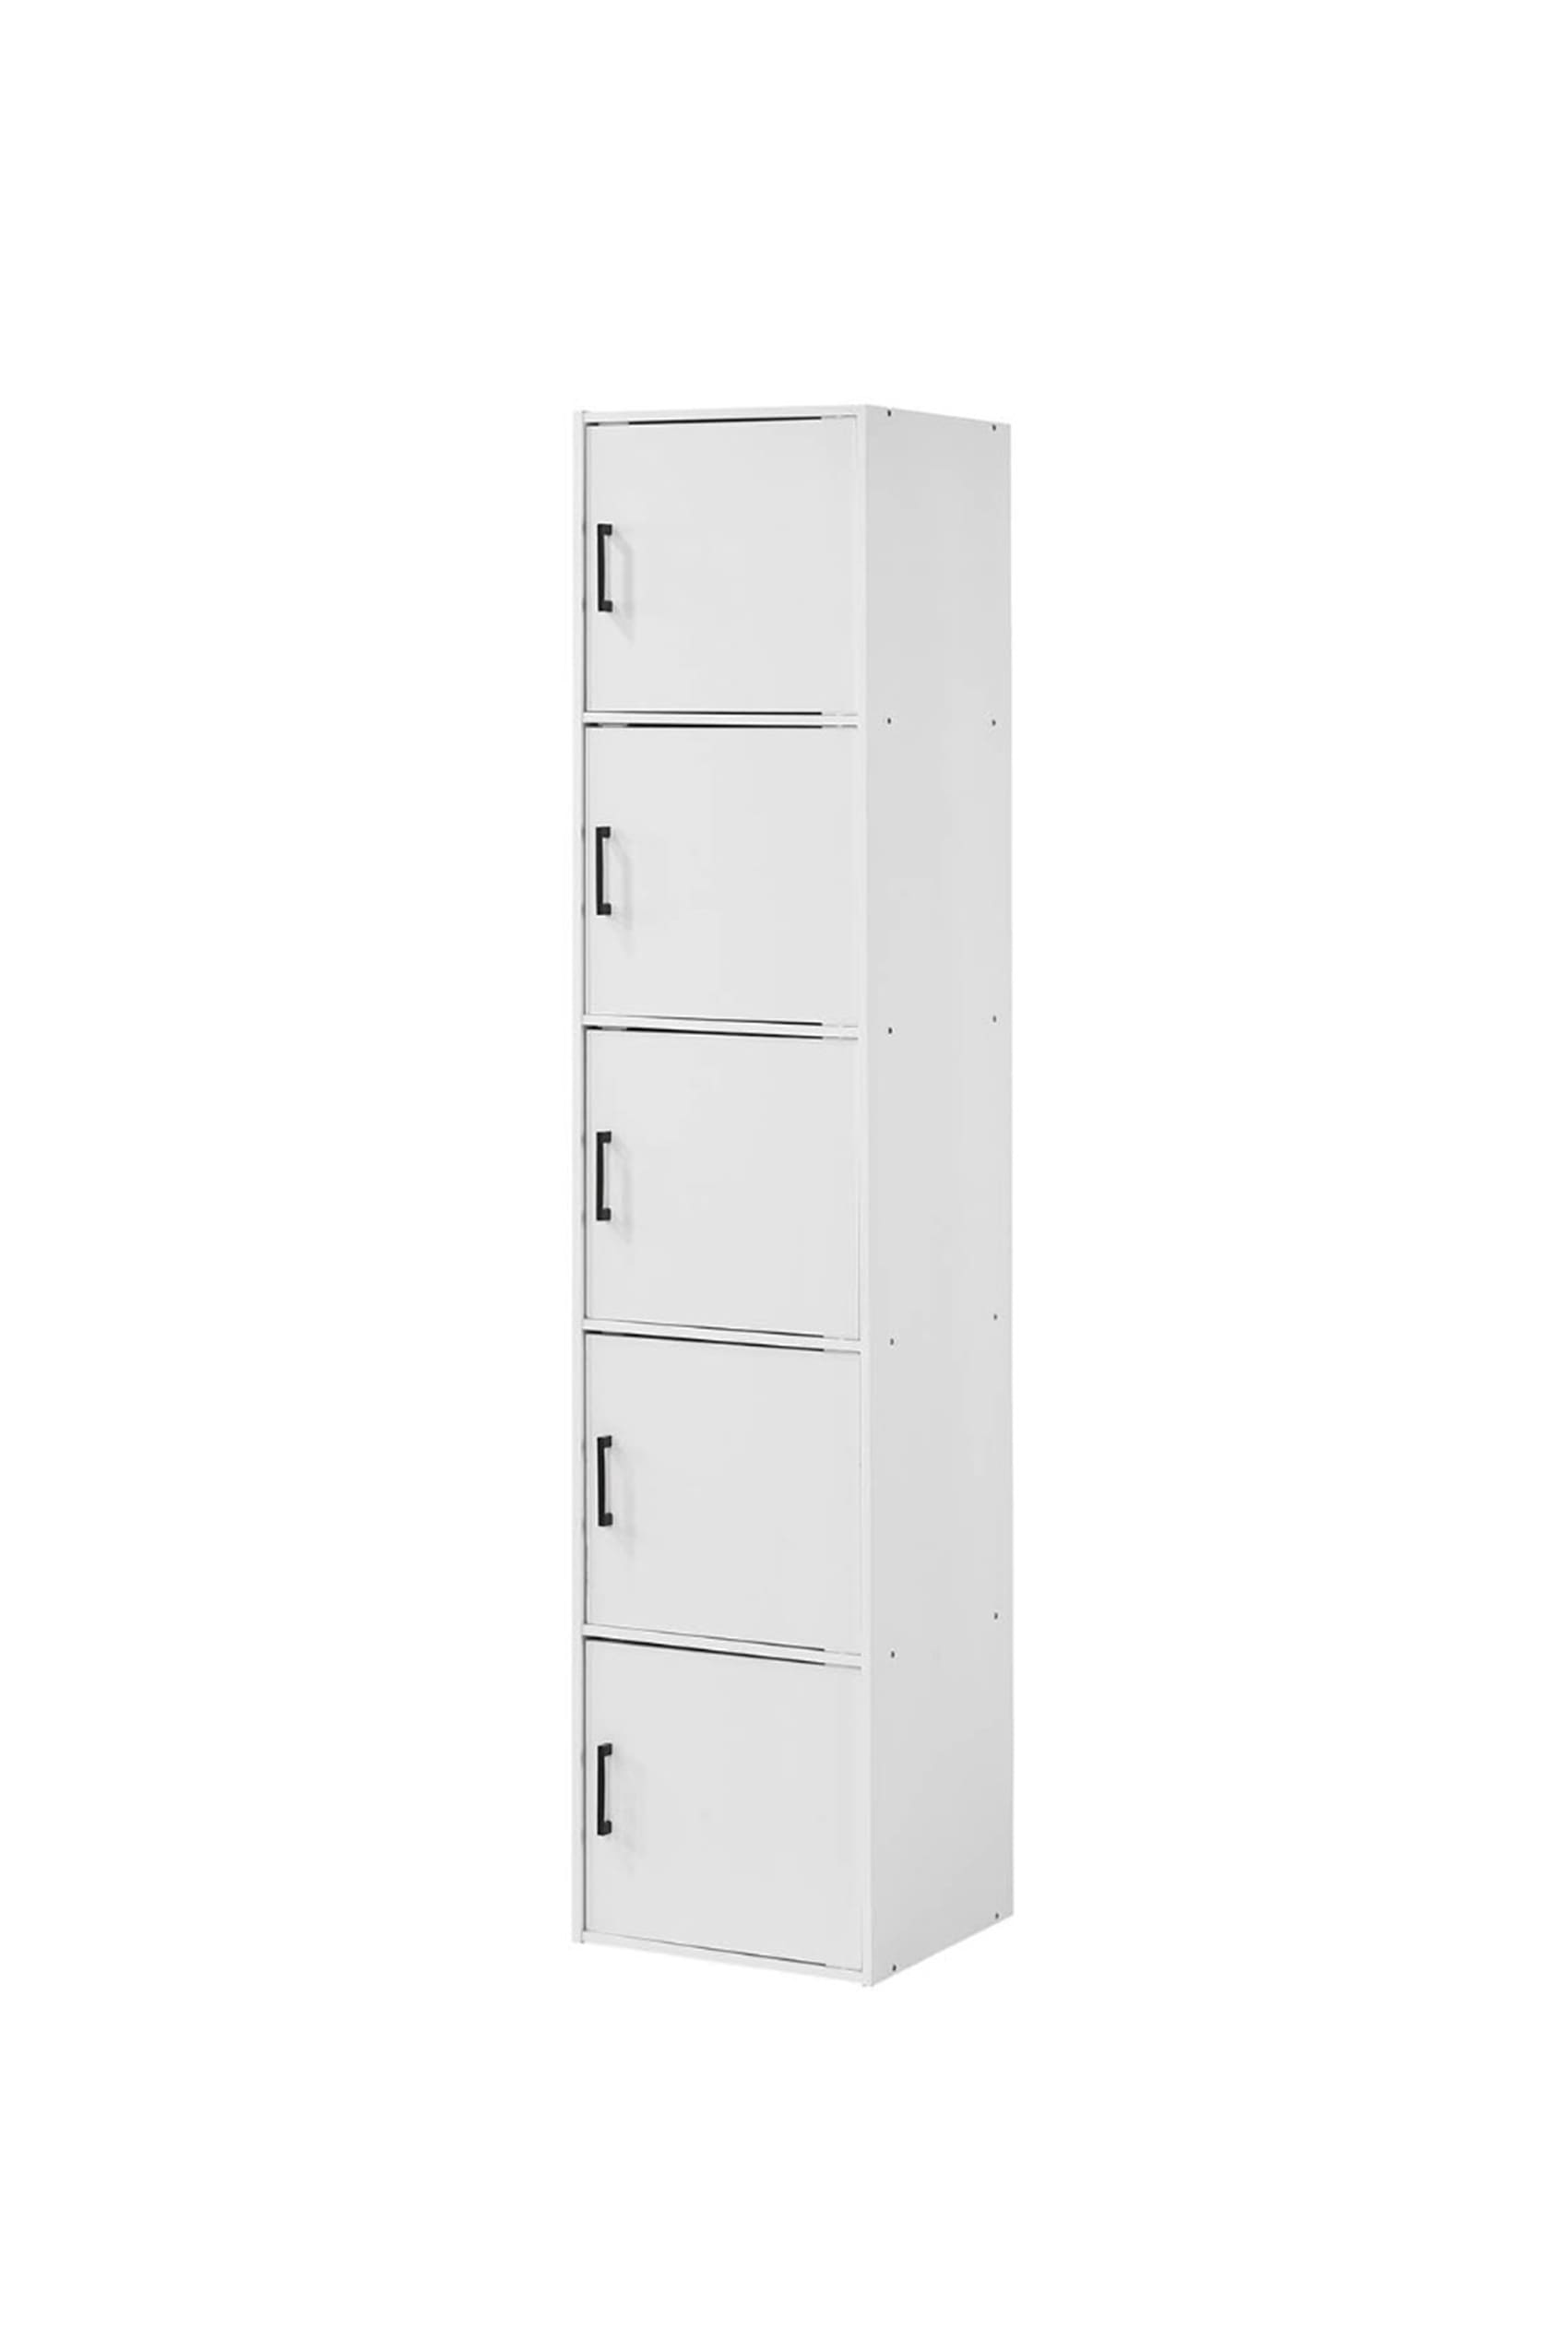 Koda 5 Door Multipurpose Cabinet